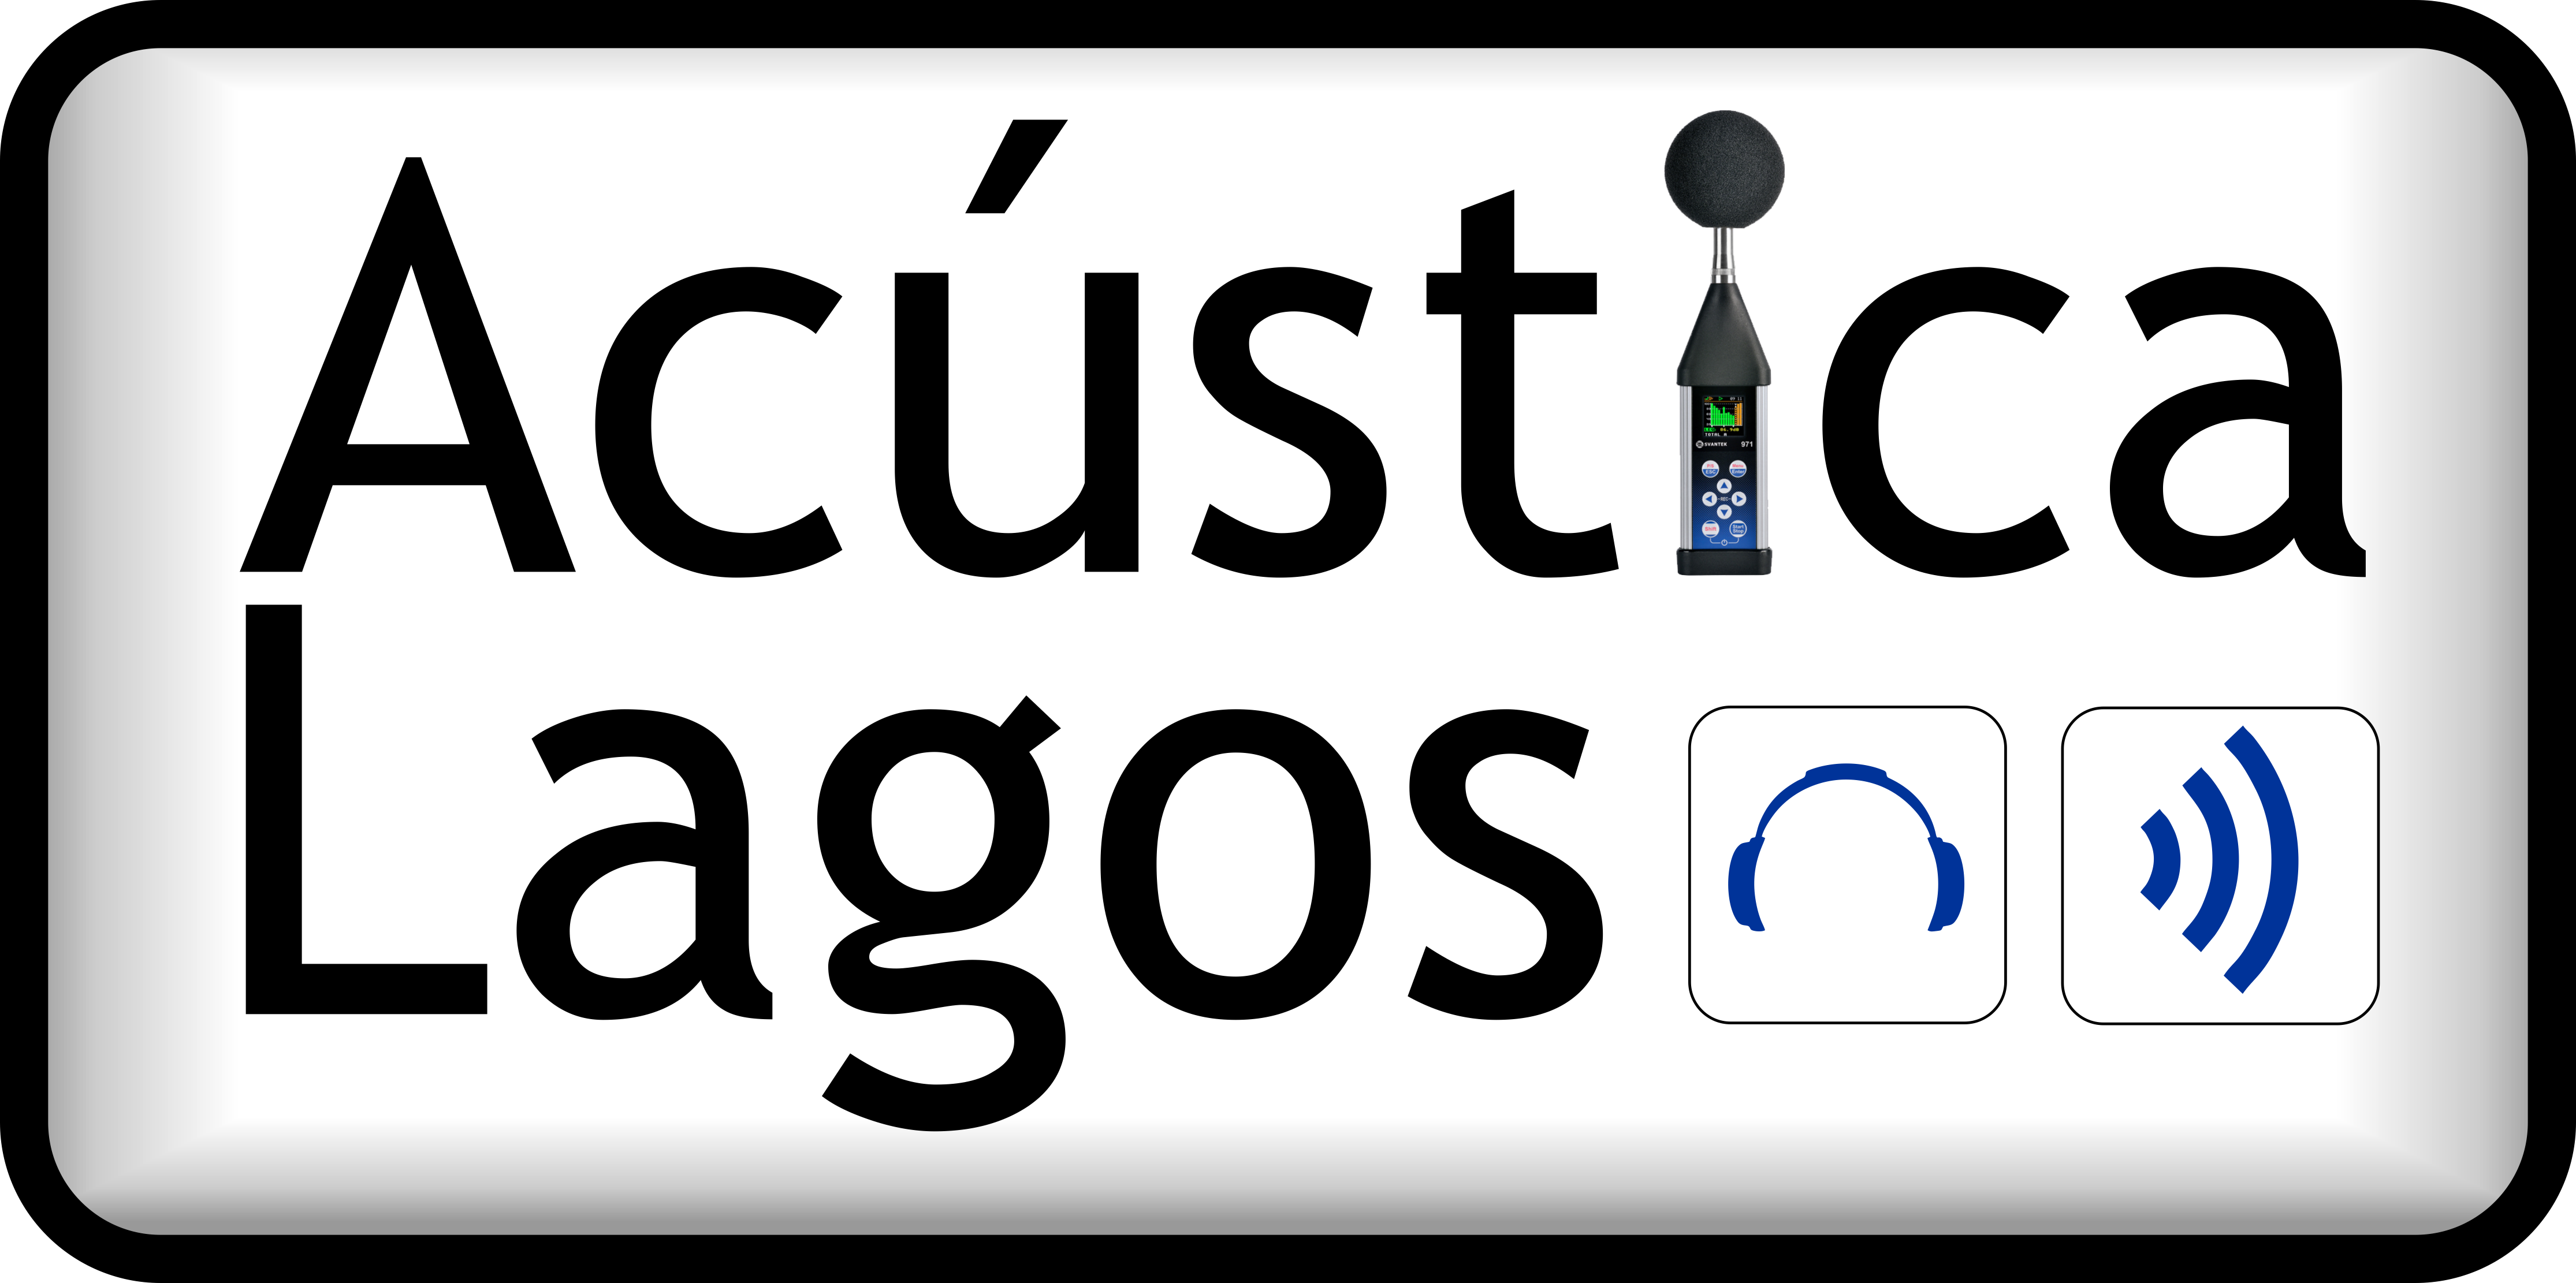 Acústica Lagos